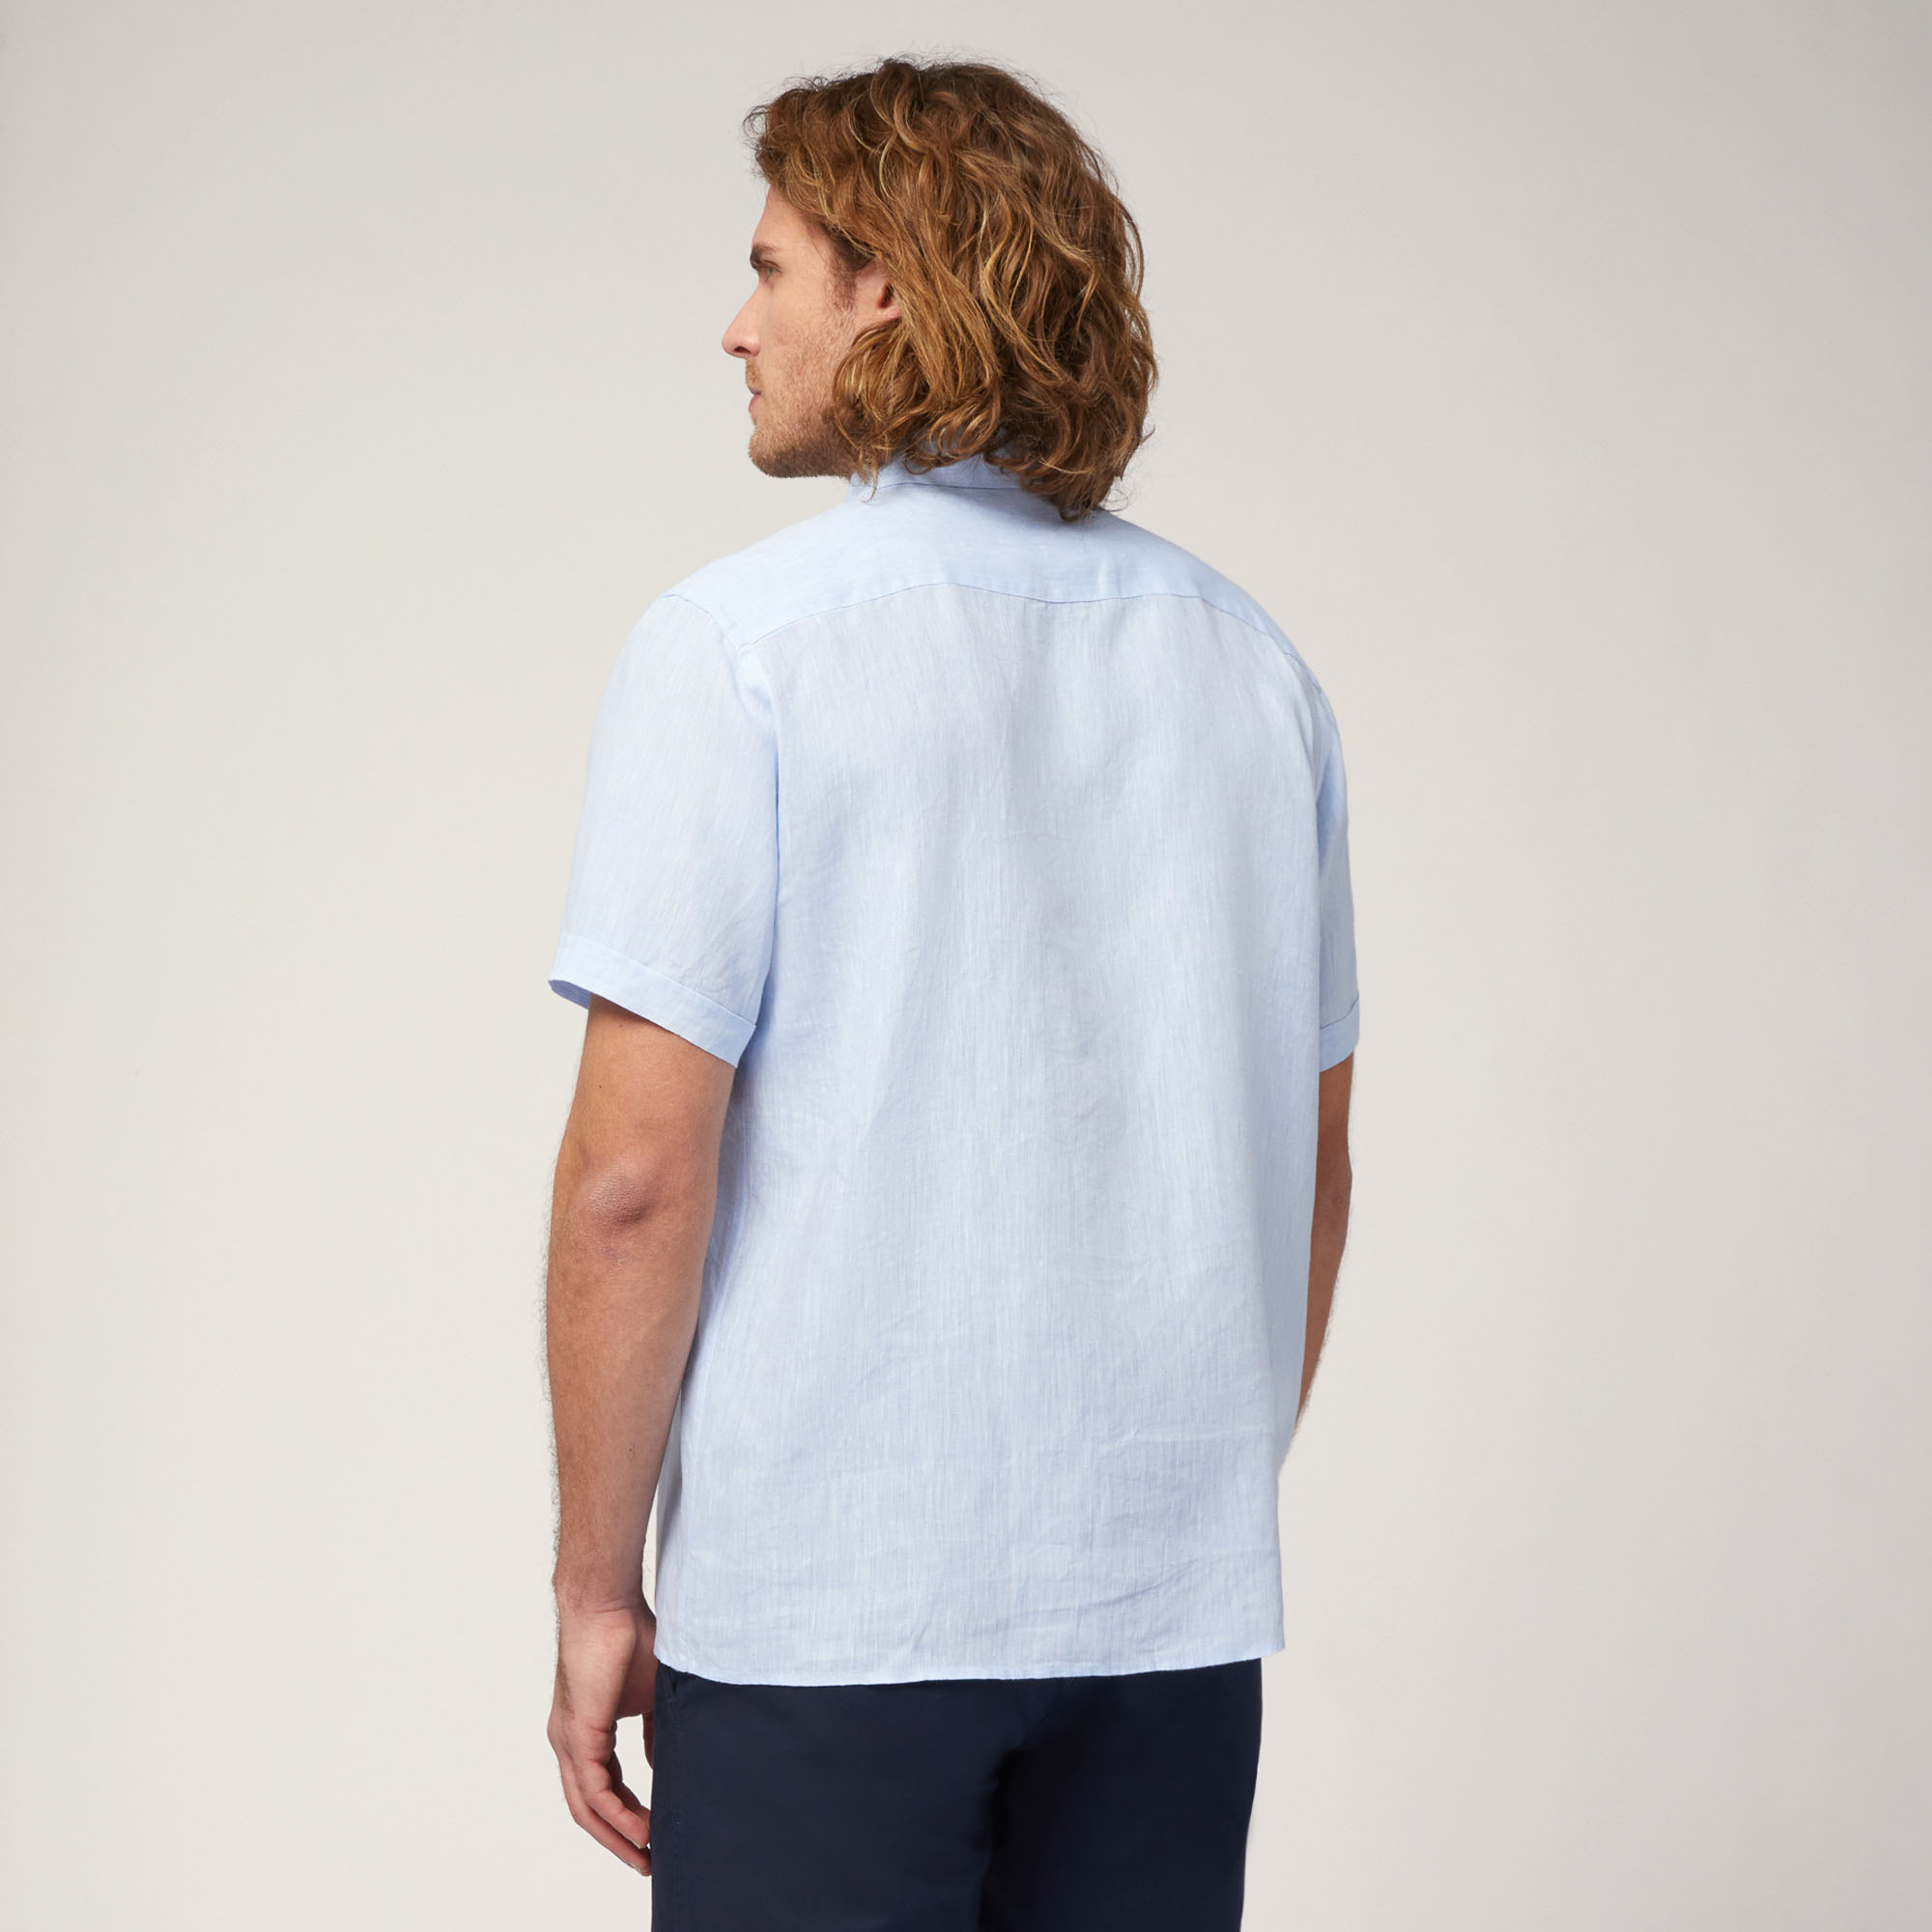 Linen Short-Sleeved Shirt, Sky Blue, large image number 1